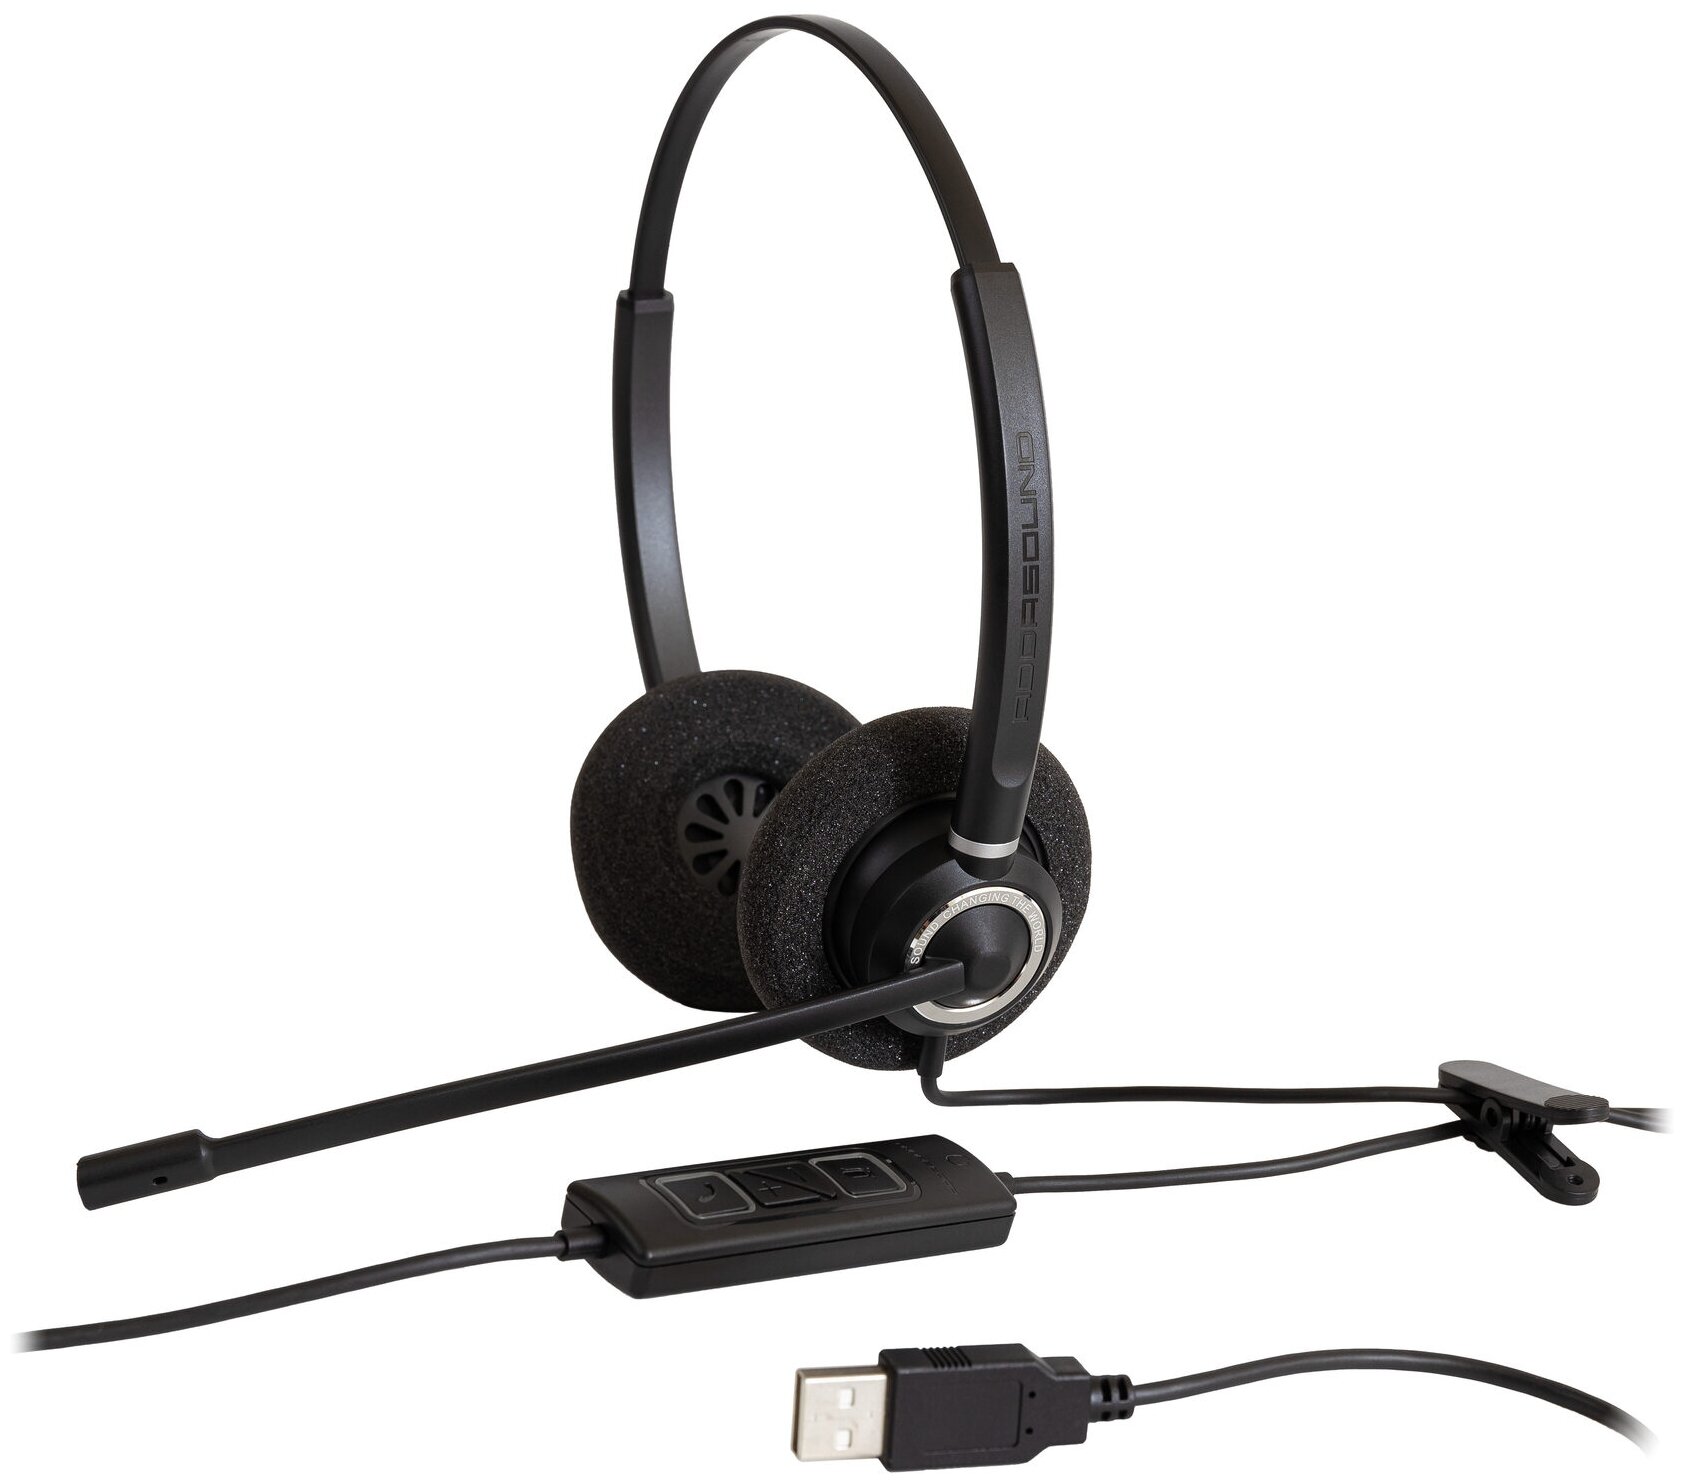 Профессиональные наушники с микрофоном ADDASOUND Epic 842, USB-A, шумоподавление, 100% UC совместимость, цвет черный (ADD-EPIC-842)